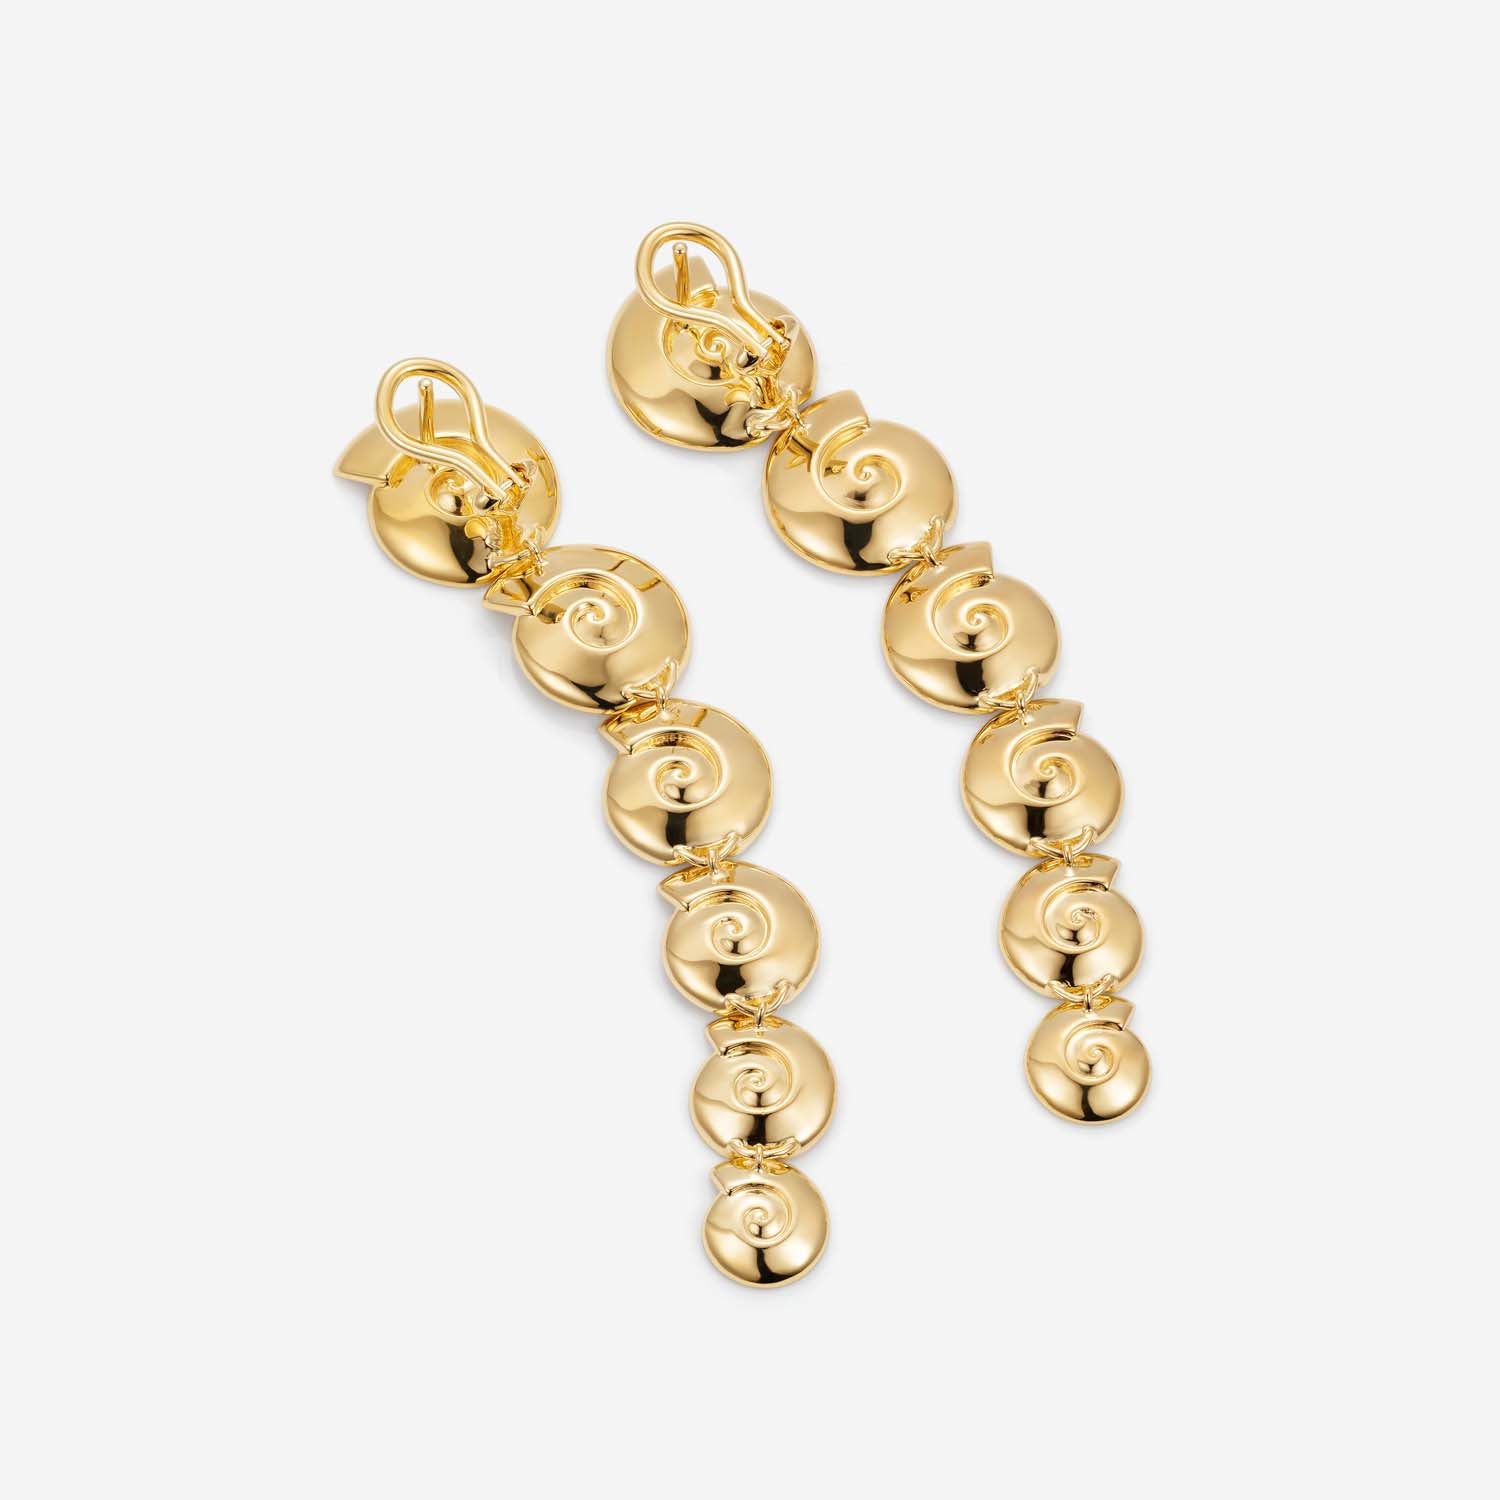 886 Royal Mint Earrings Tutamen Spiral Drop Earrings 18ct Yellow Gold